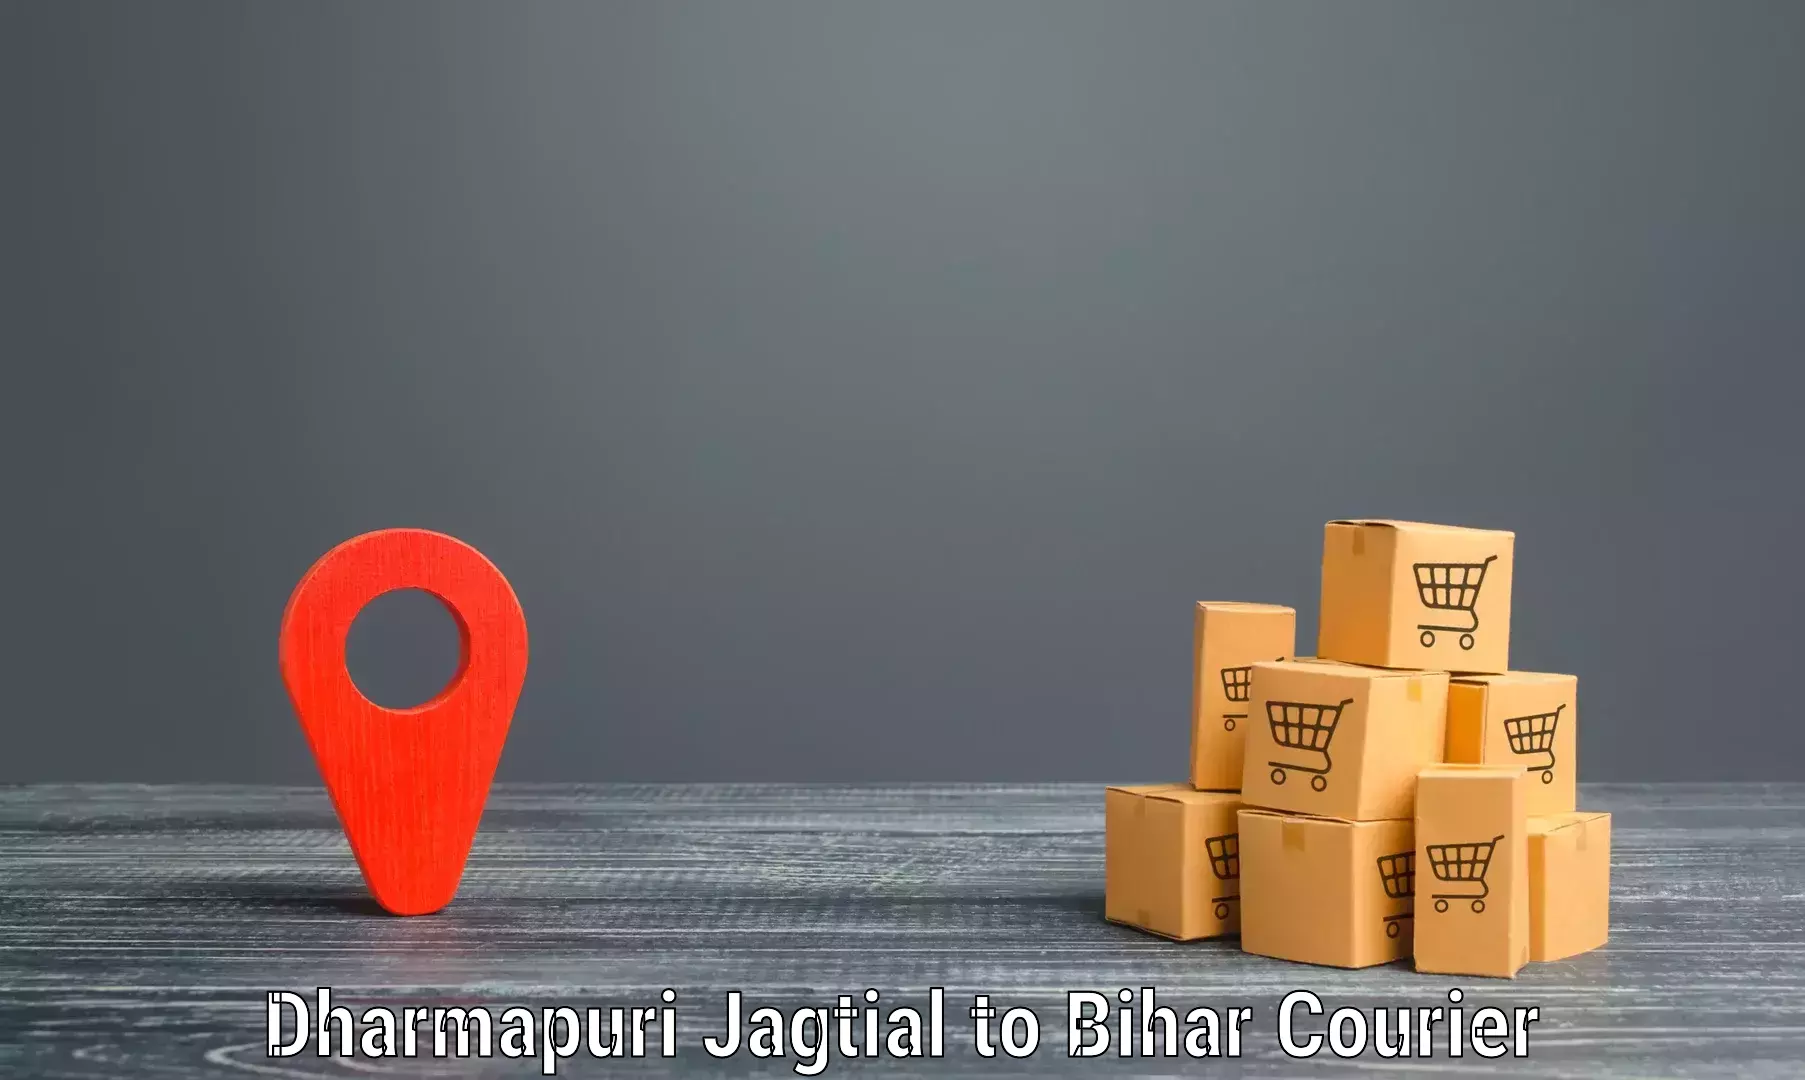 Courier app Dharmapuri Jagtial to Aurangabad Bihar